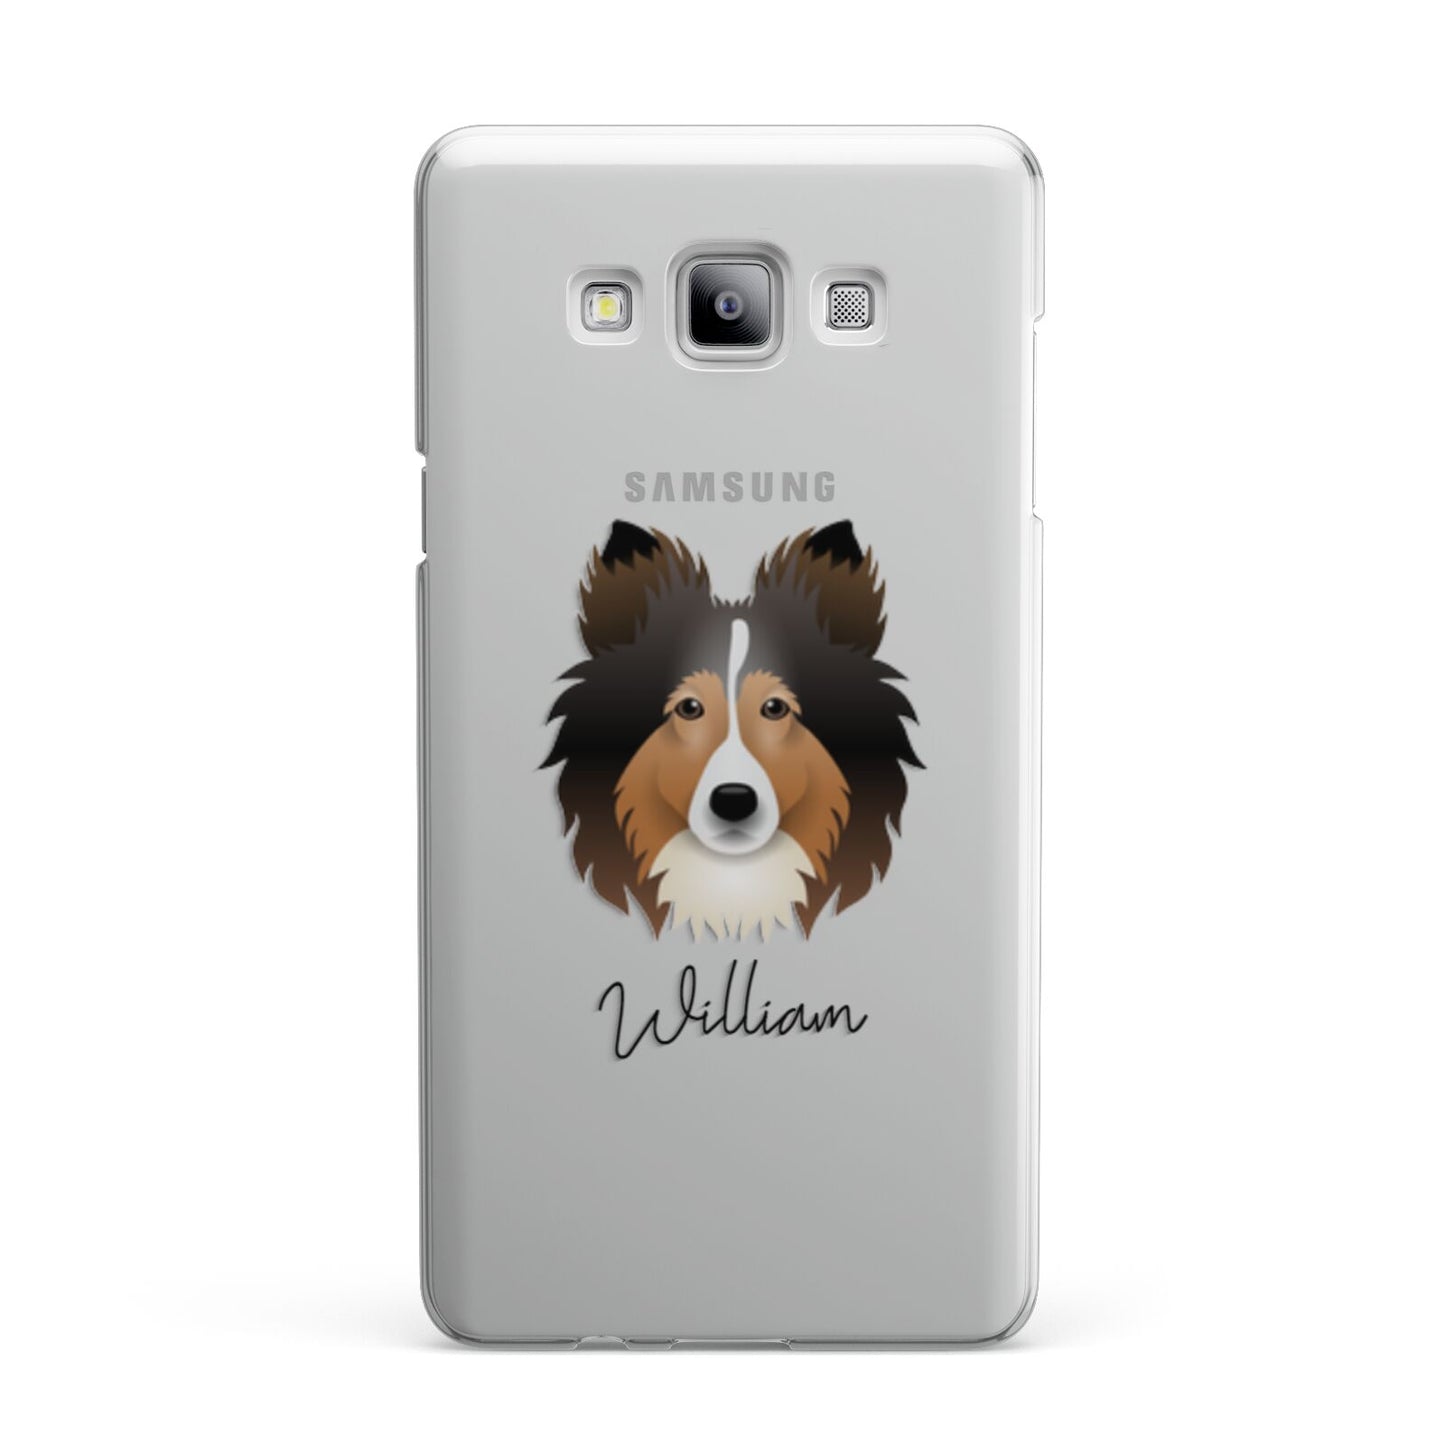 Shetland Sheepdog Personalised Samsung Galaxy A7 2015 Case